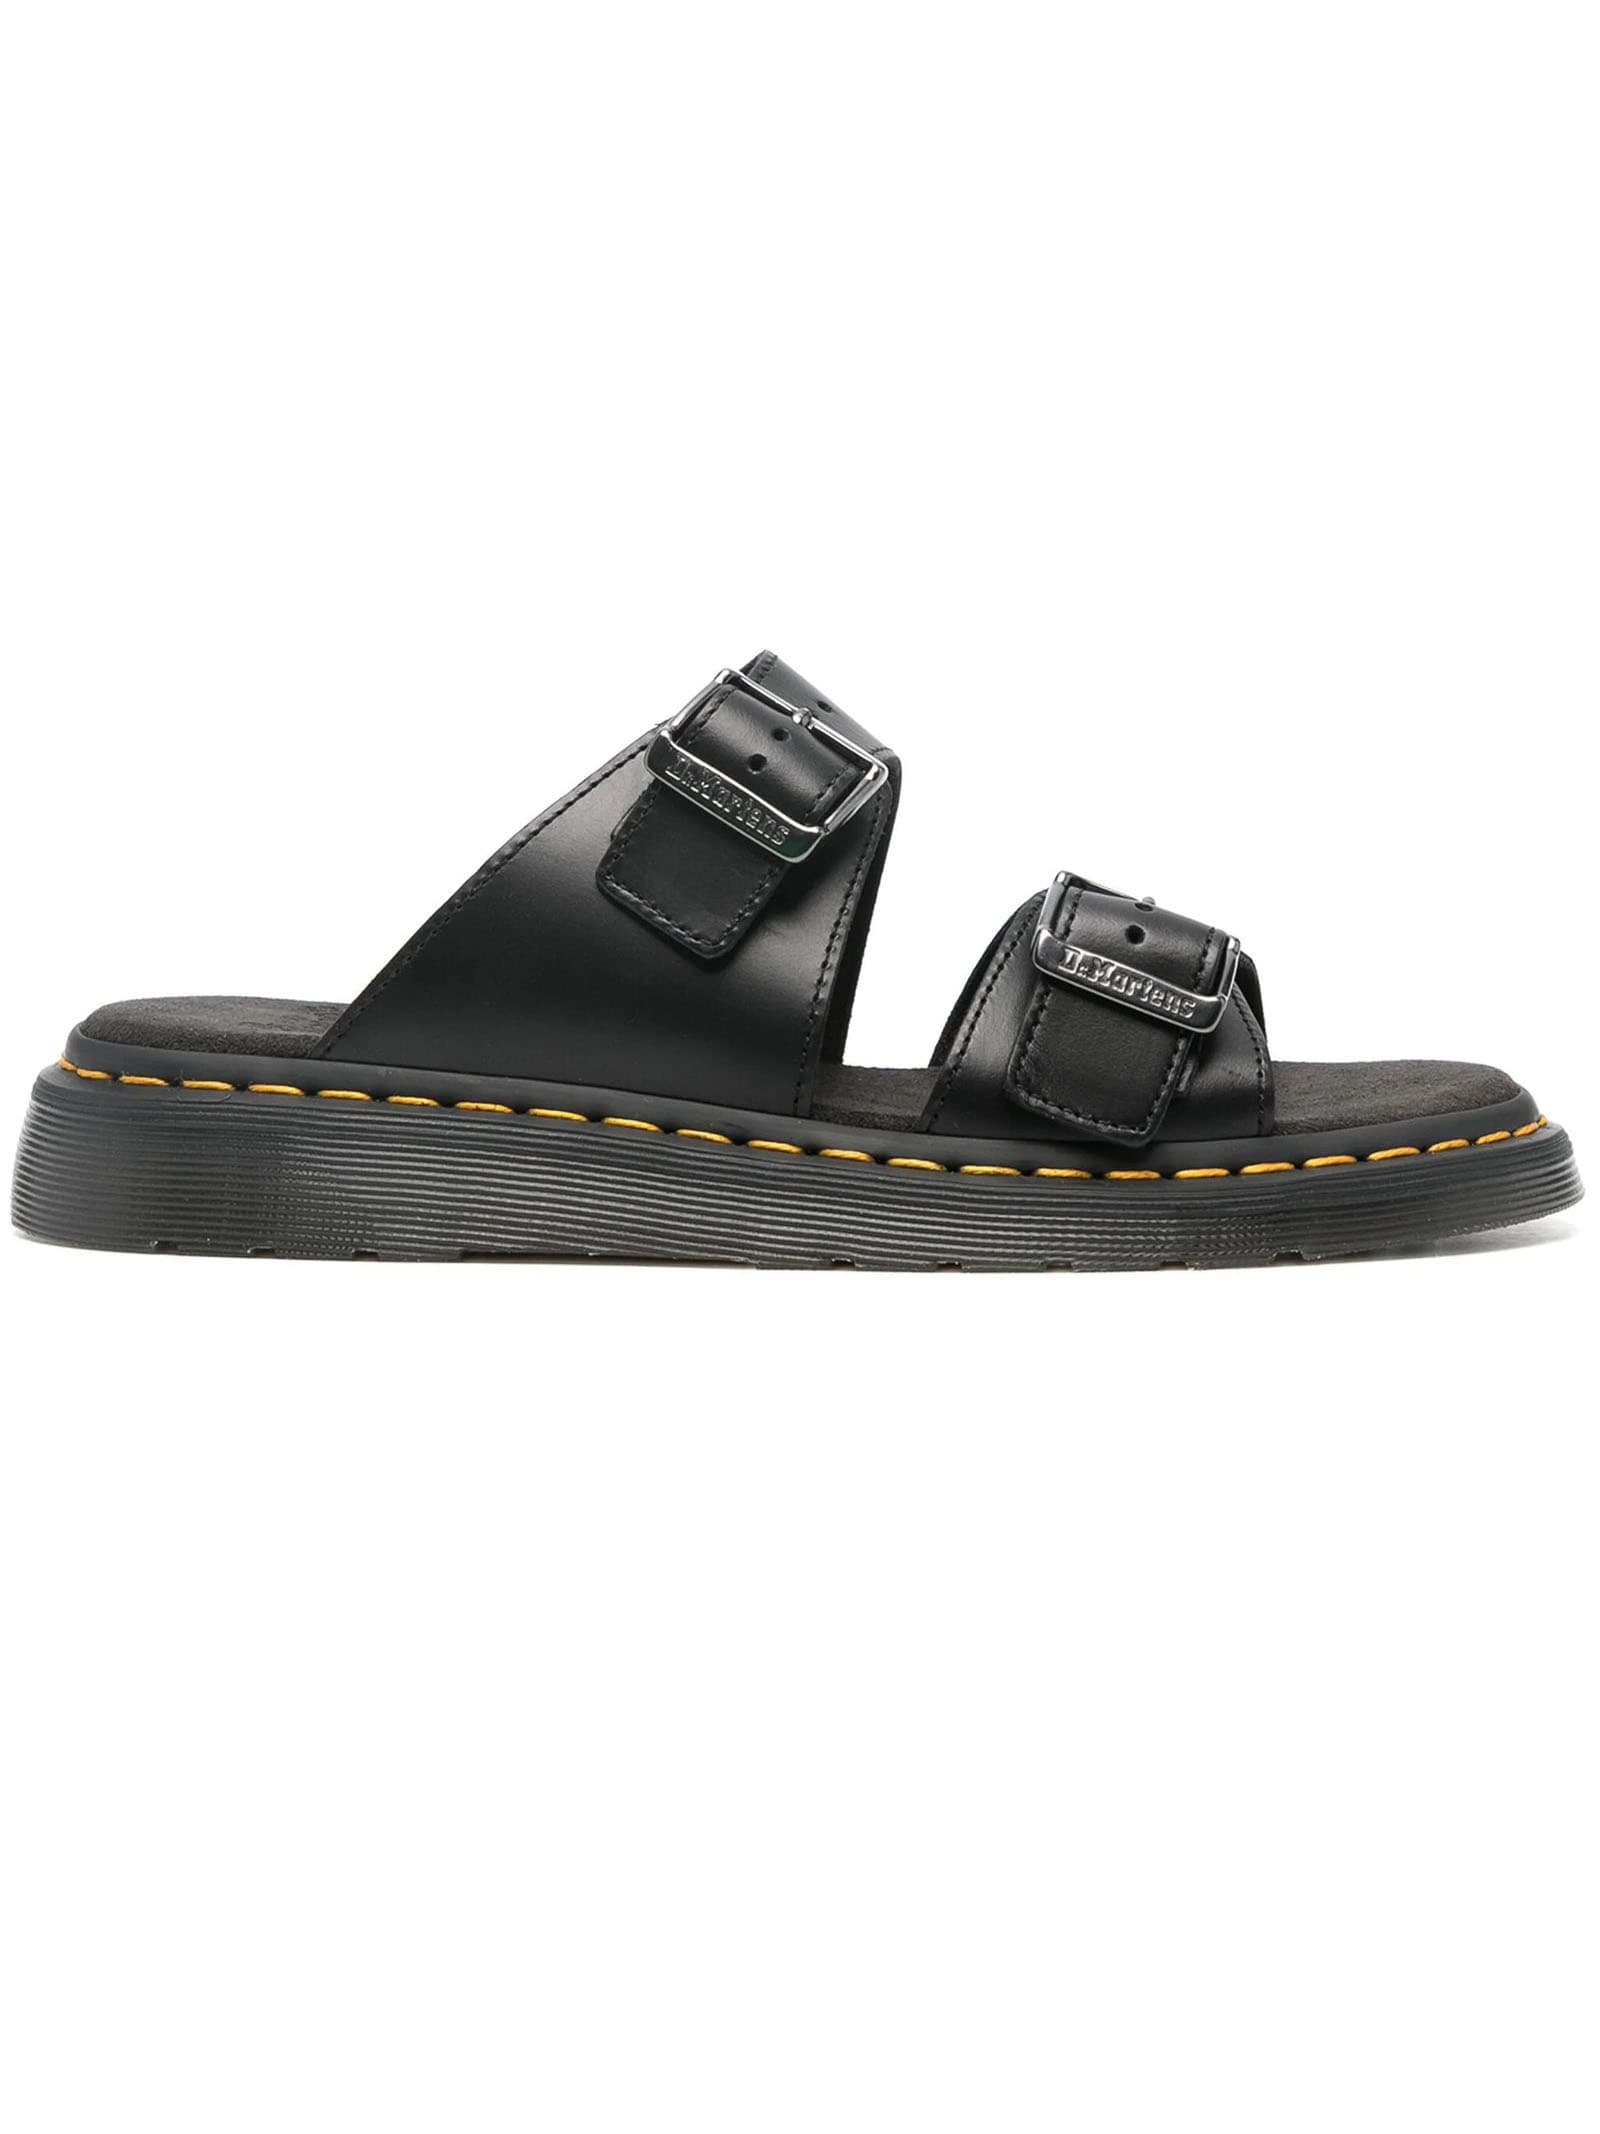 Shop Dr. Martens' Black Josef Leather Sandals